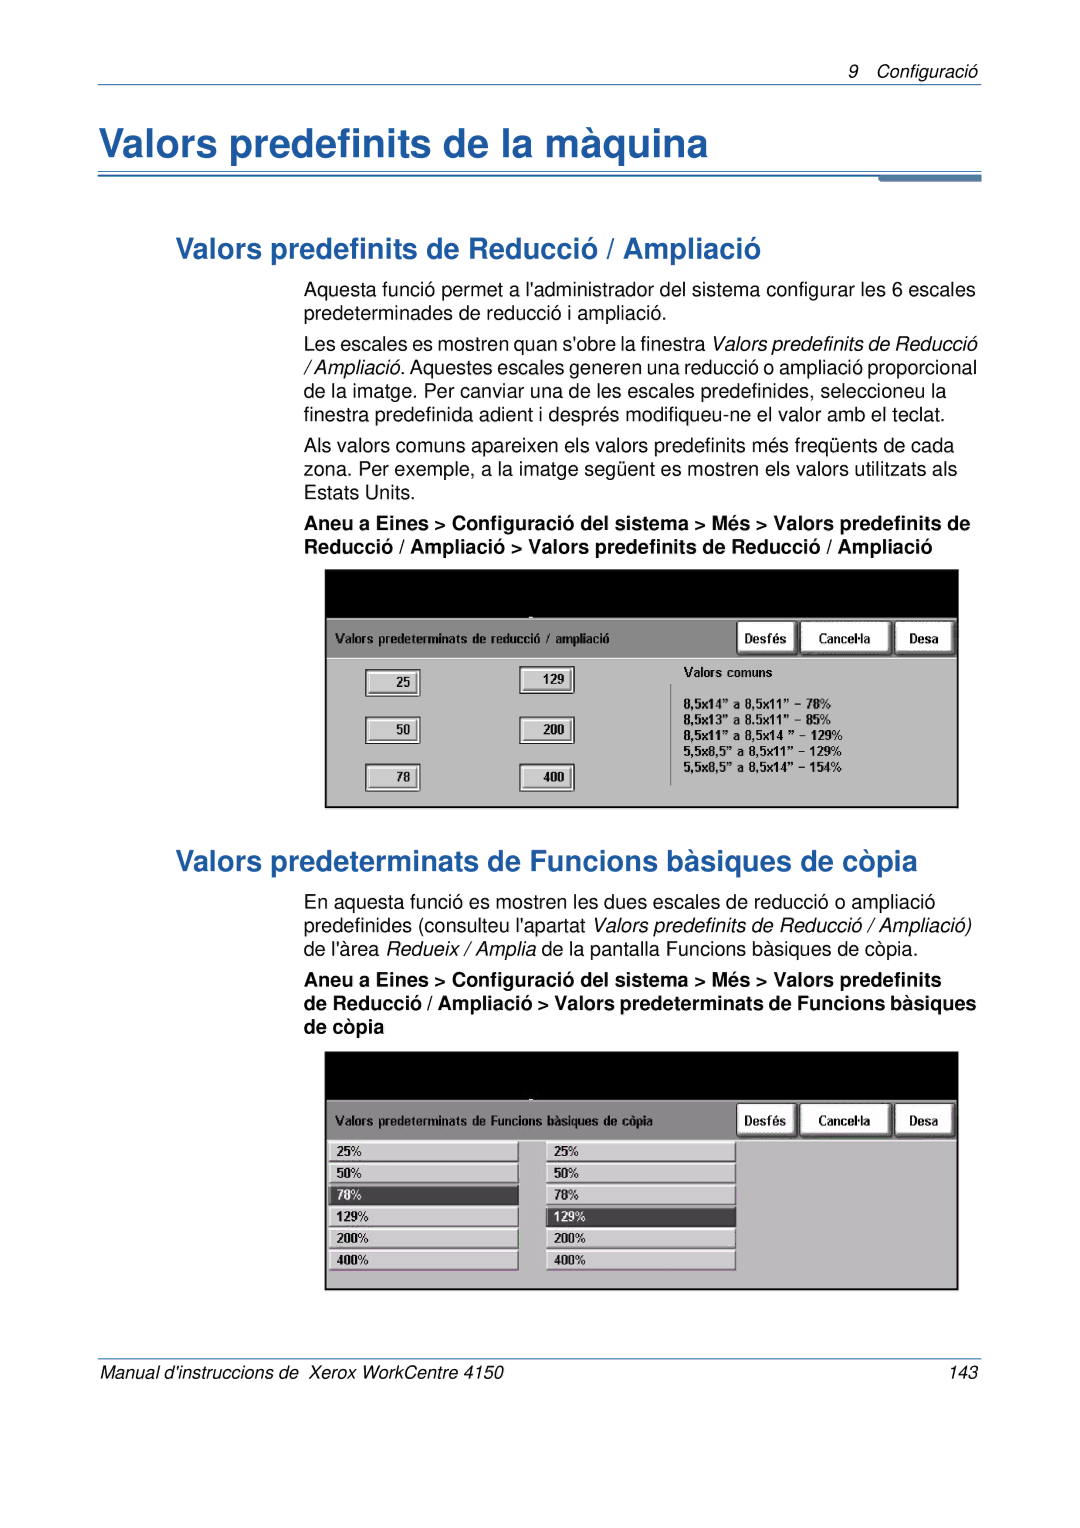 Xerox 5.0 24.03.06 manual Valors predefinits de la màquina, Valors predefinits de Reducció / Ampliació 